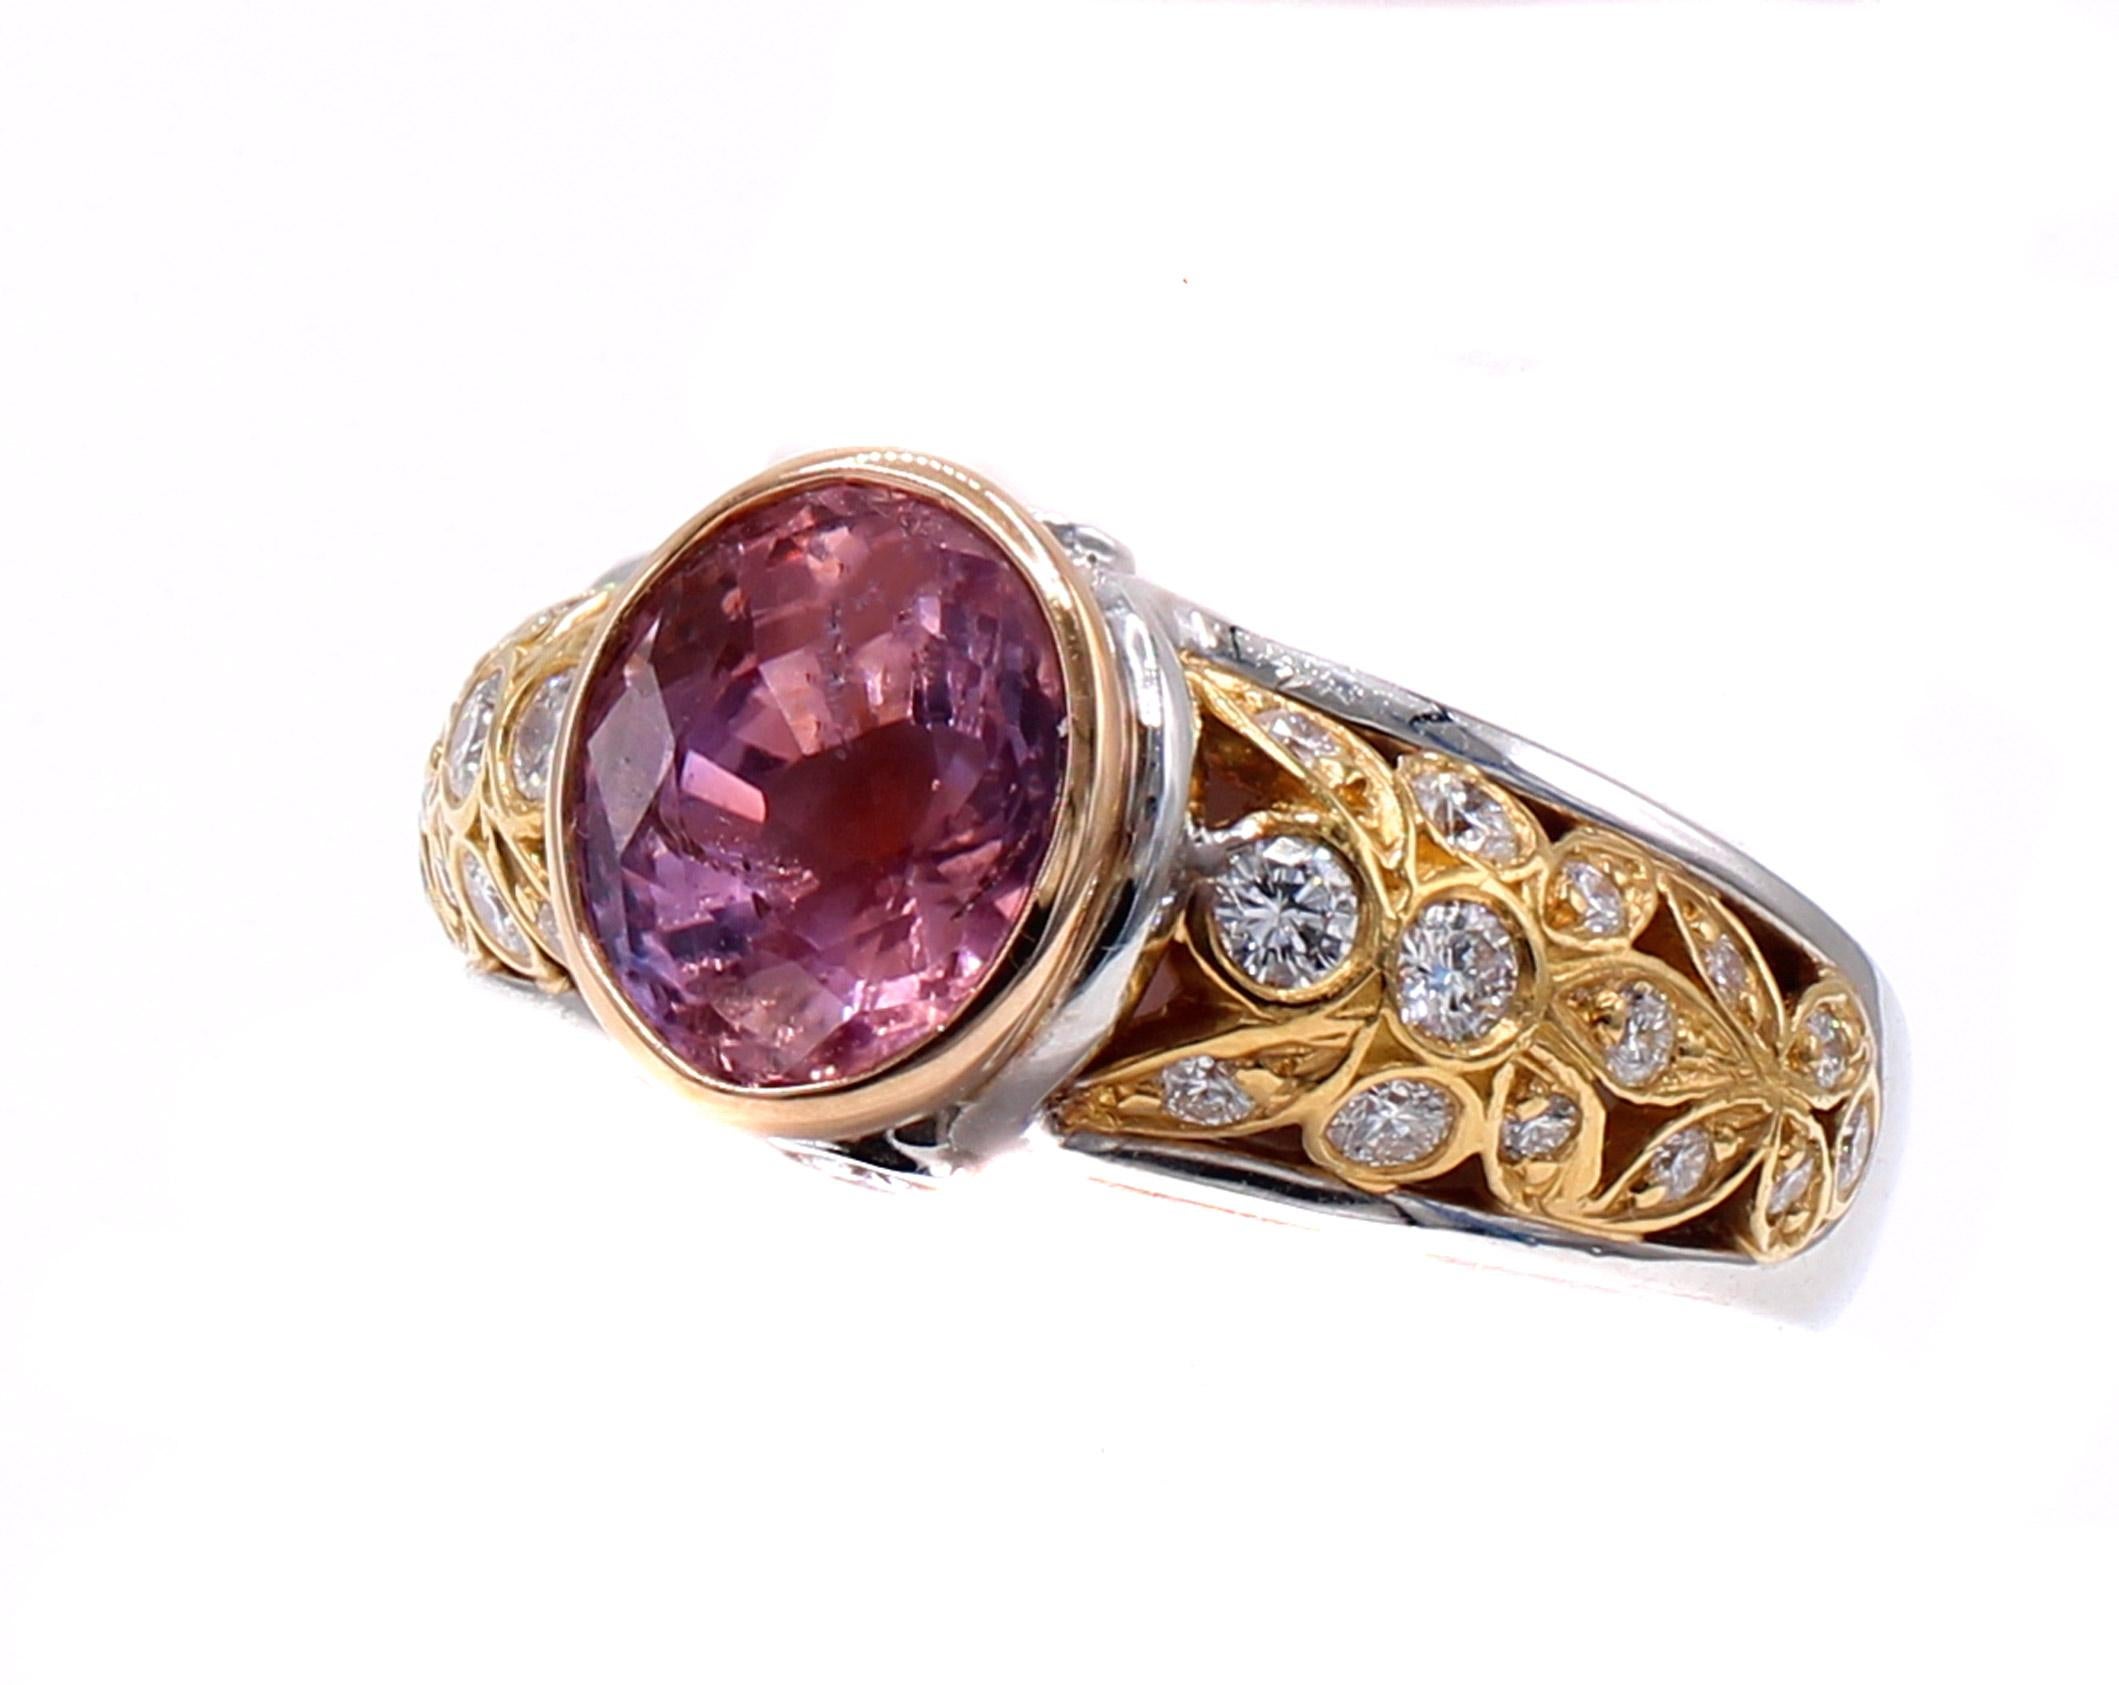 Dieser einzigartige, wunderschön gestaltete und meisterhaft handgefertigte Ring enthält einen erstaunlichen und seltenen natürlichen Padparadscha-Saphir von 3,39 Karat. Dieser wunderschöne Edelstein, der in einer Lünette aus 22 Karat Roségold